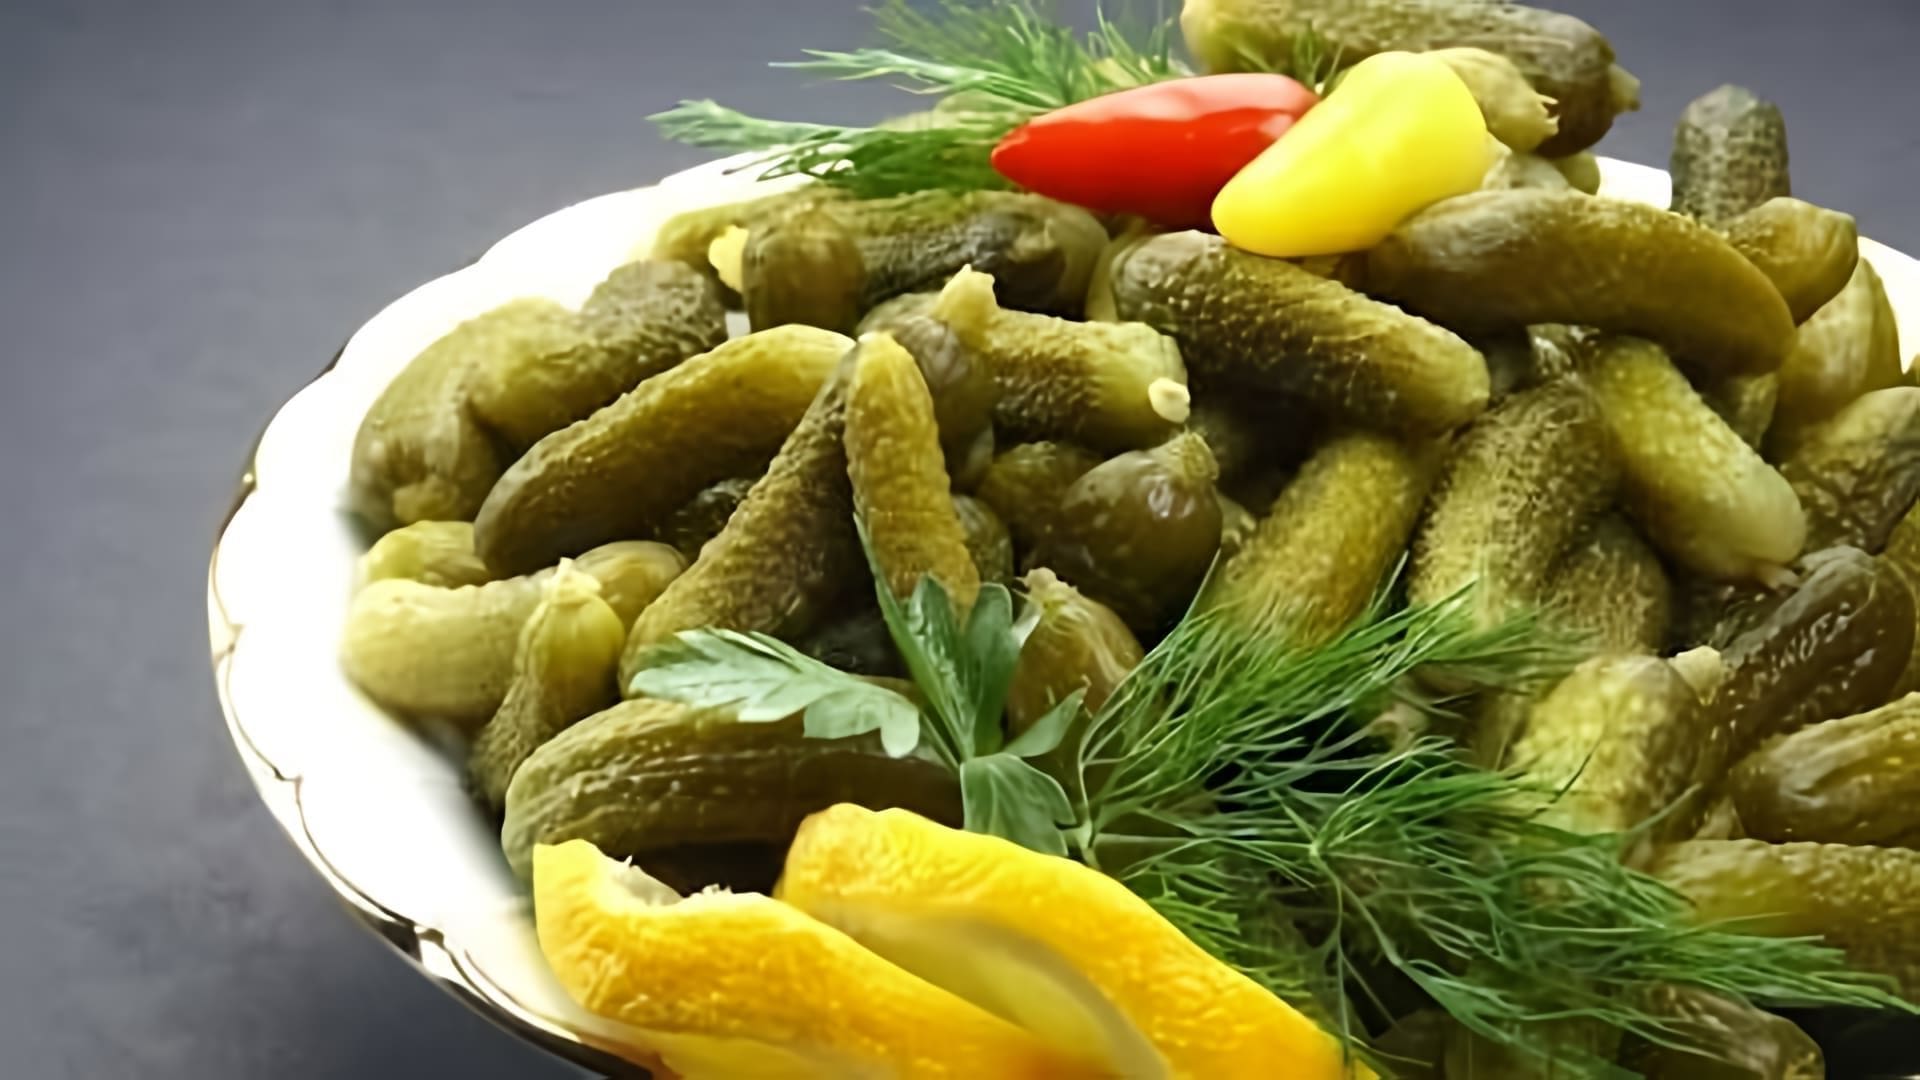 В этом видео демонстрируется процесс приготовления турецкого блюда "Туршу" из огурцов